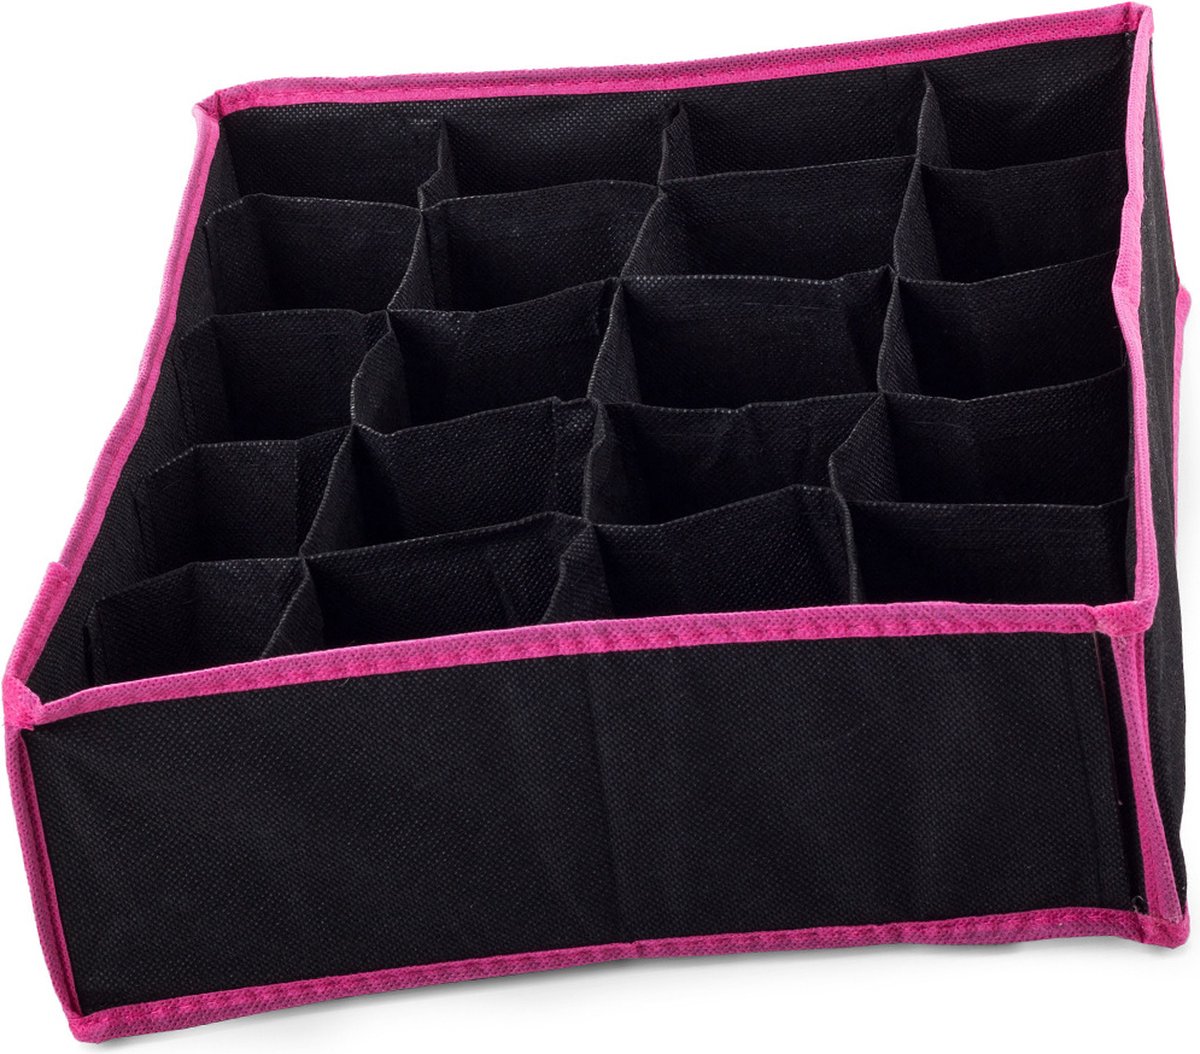 2X Organizer voor ondergoed en sokken lades - 20 Vaks - Zwart/Roze - Materiaal linnen - Goed luchtdoorlatend